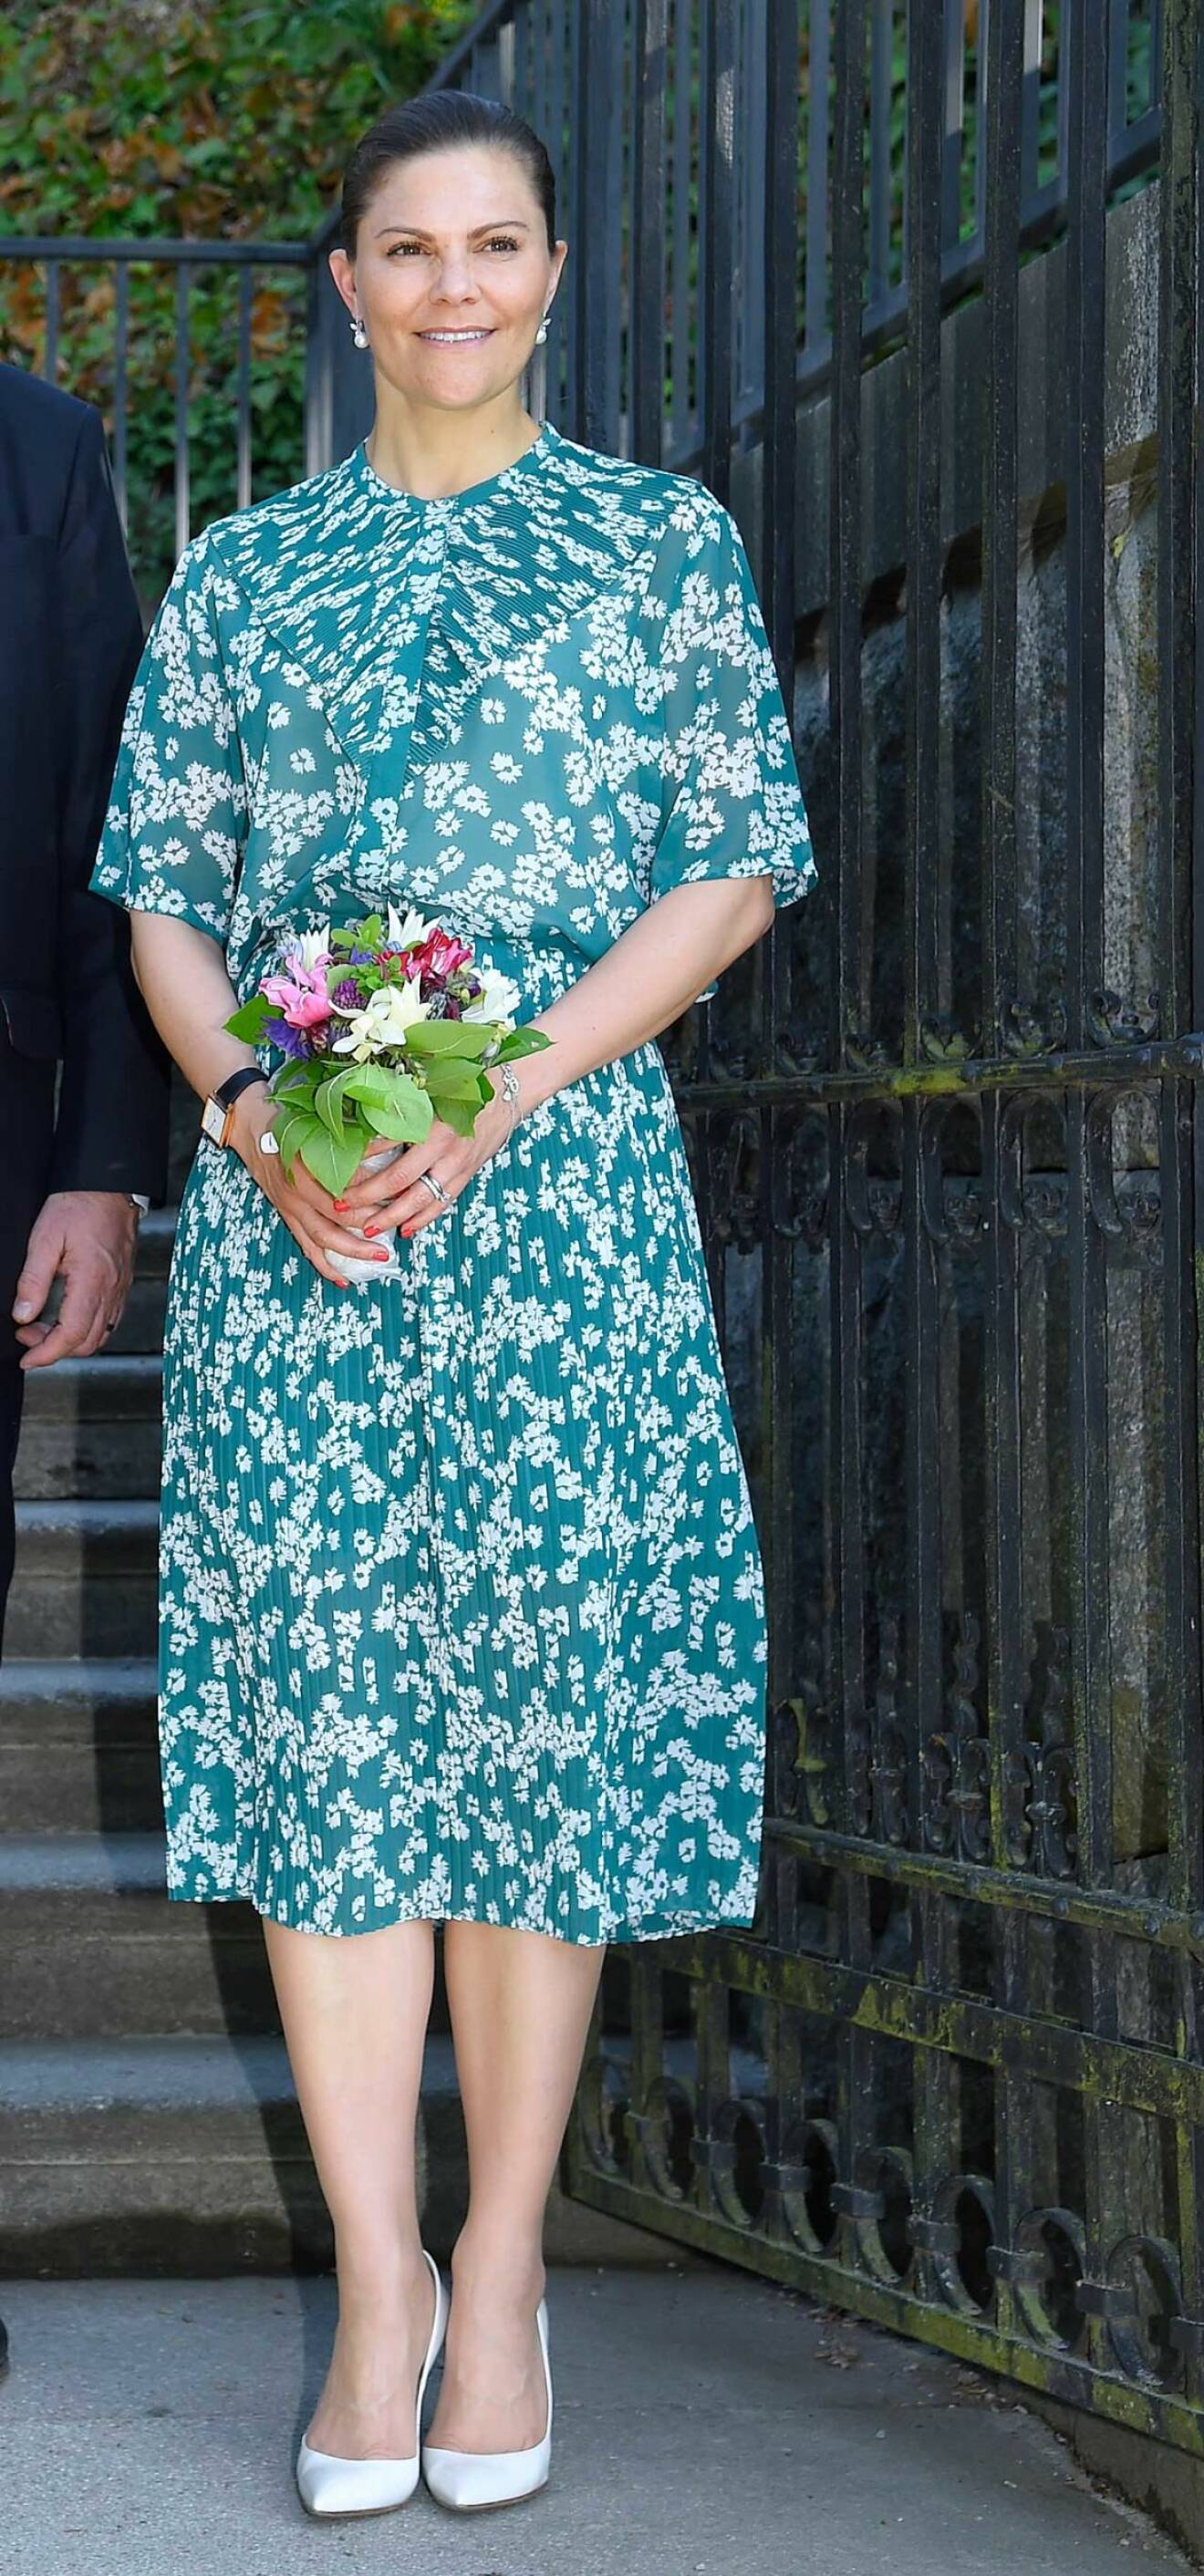 Kronprinsessan Victoria i blus och kjol från danska Samsoe & Samsoe.